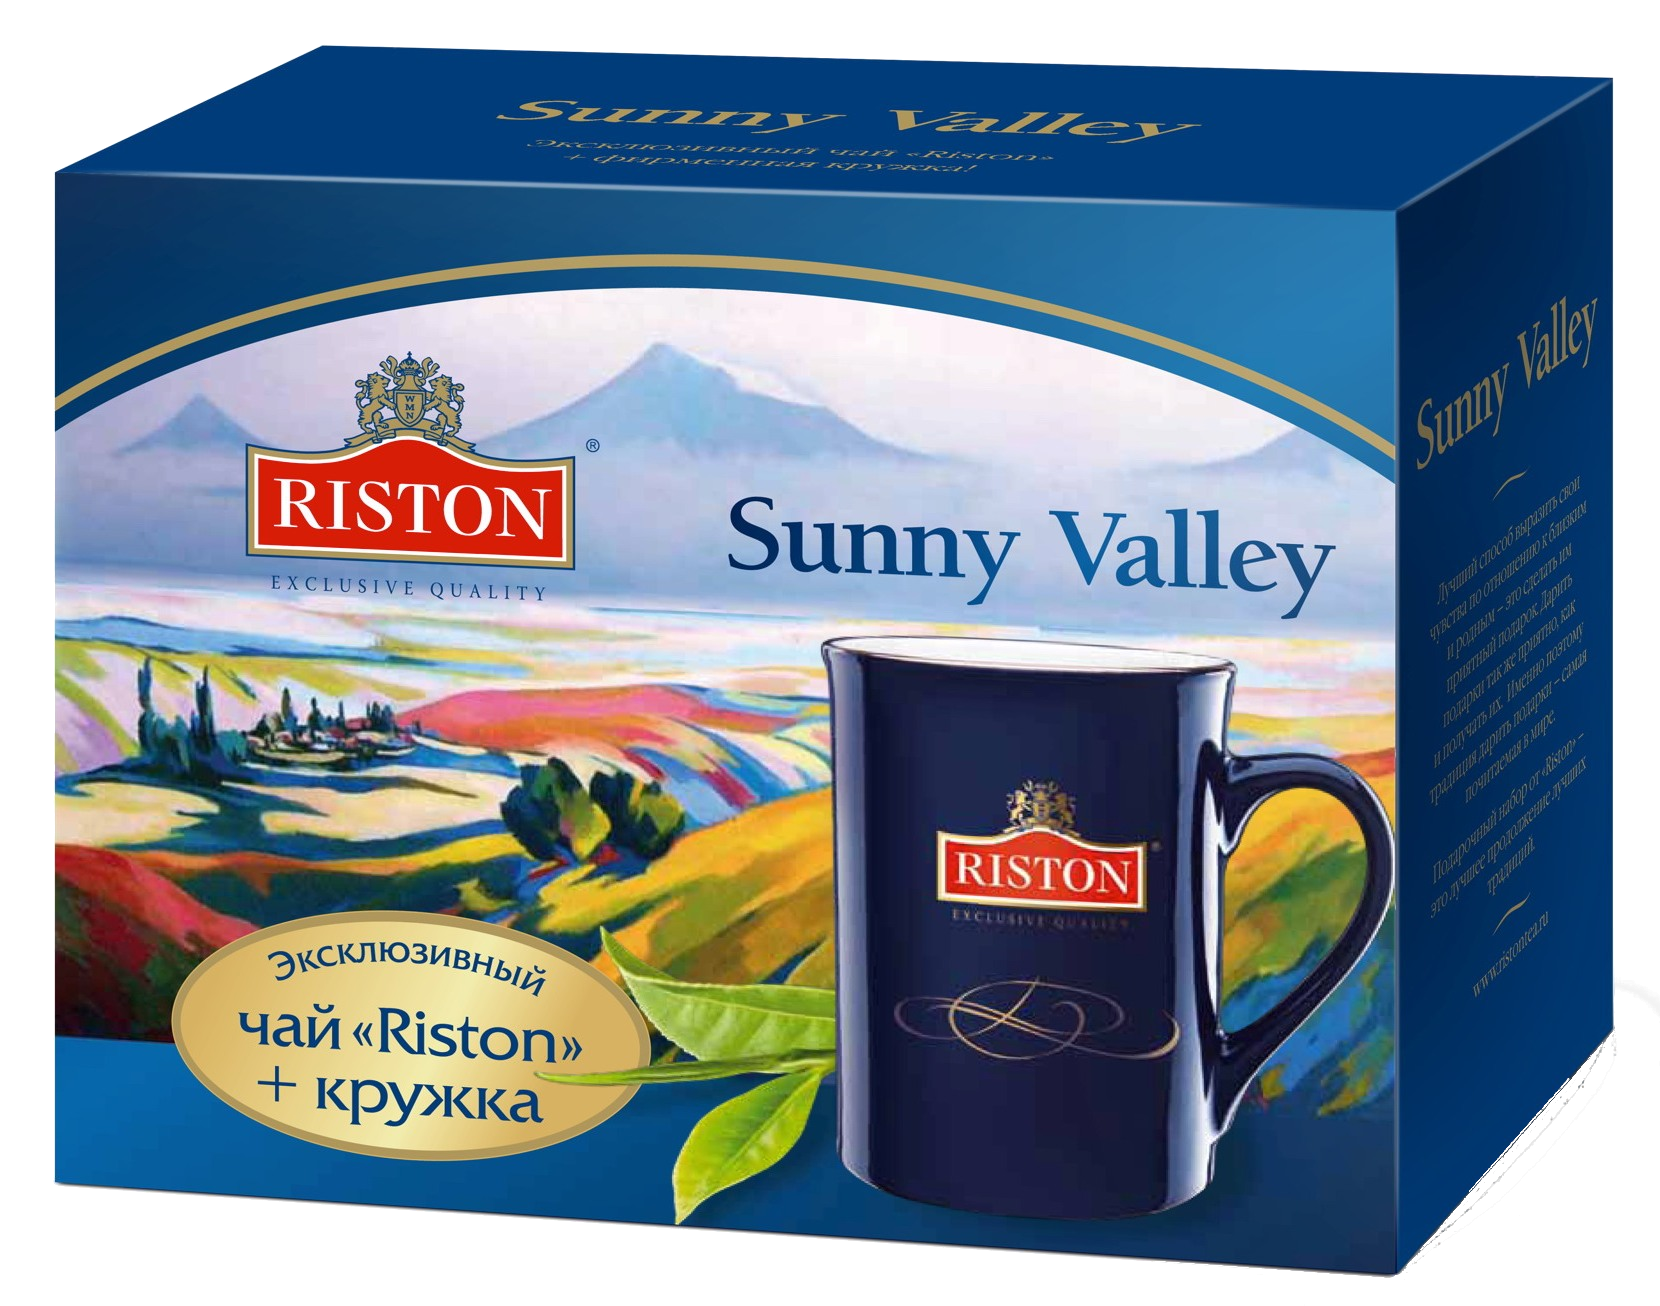 Чай Гринфилд Брекфаст. Чай черный Riston элитный цейлонский 25пак*2г. Чайный набор Ристон. Подарочный набор чая Riston. Купить чай в ижевске